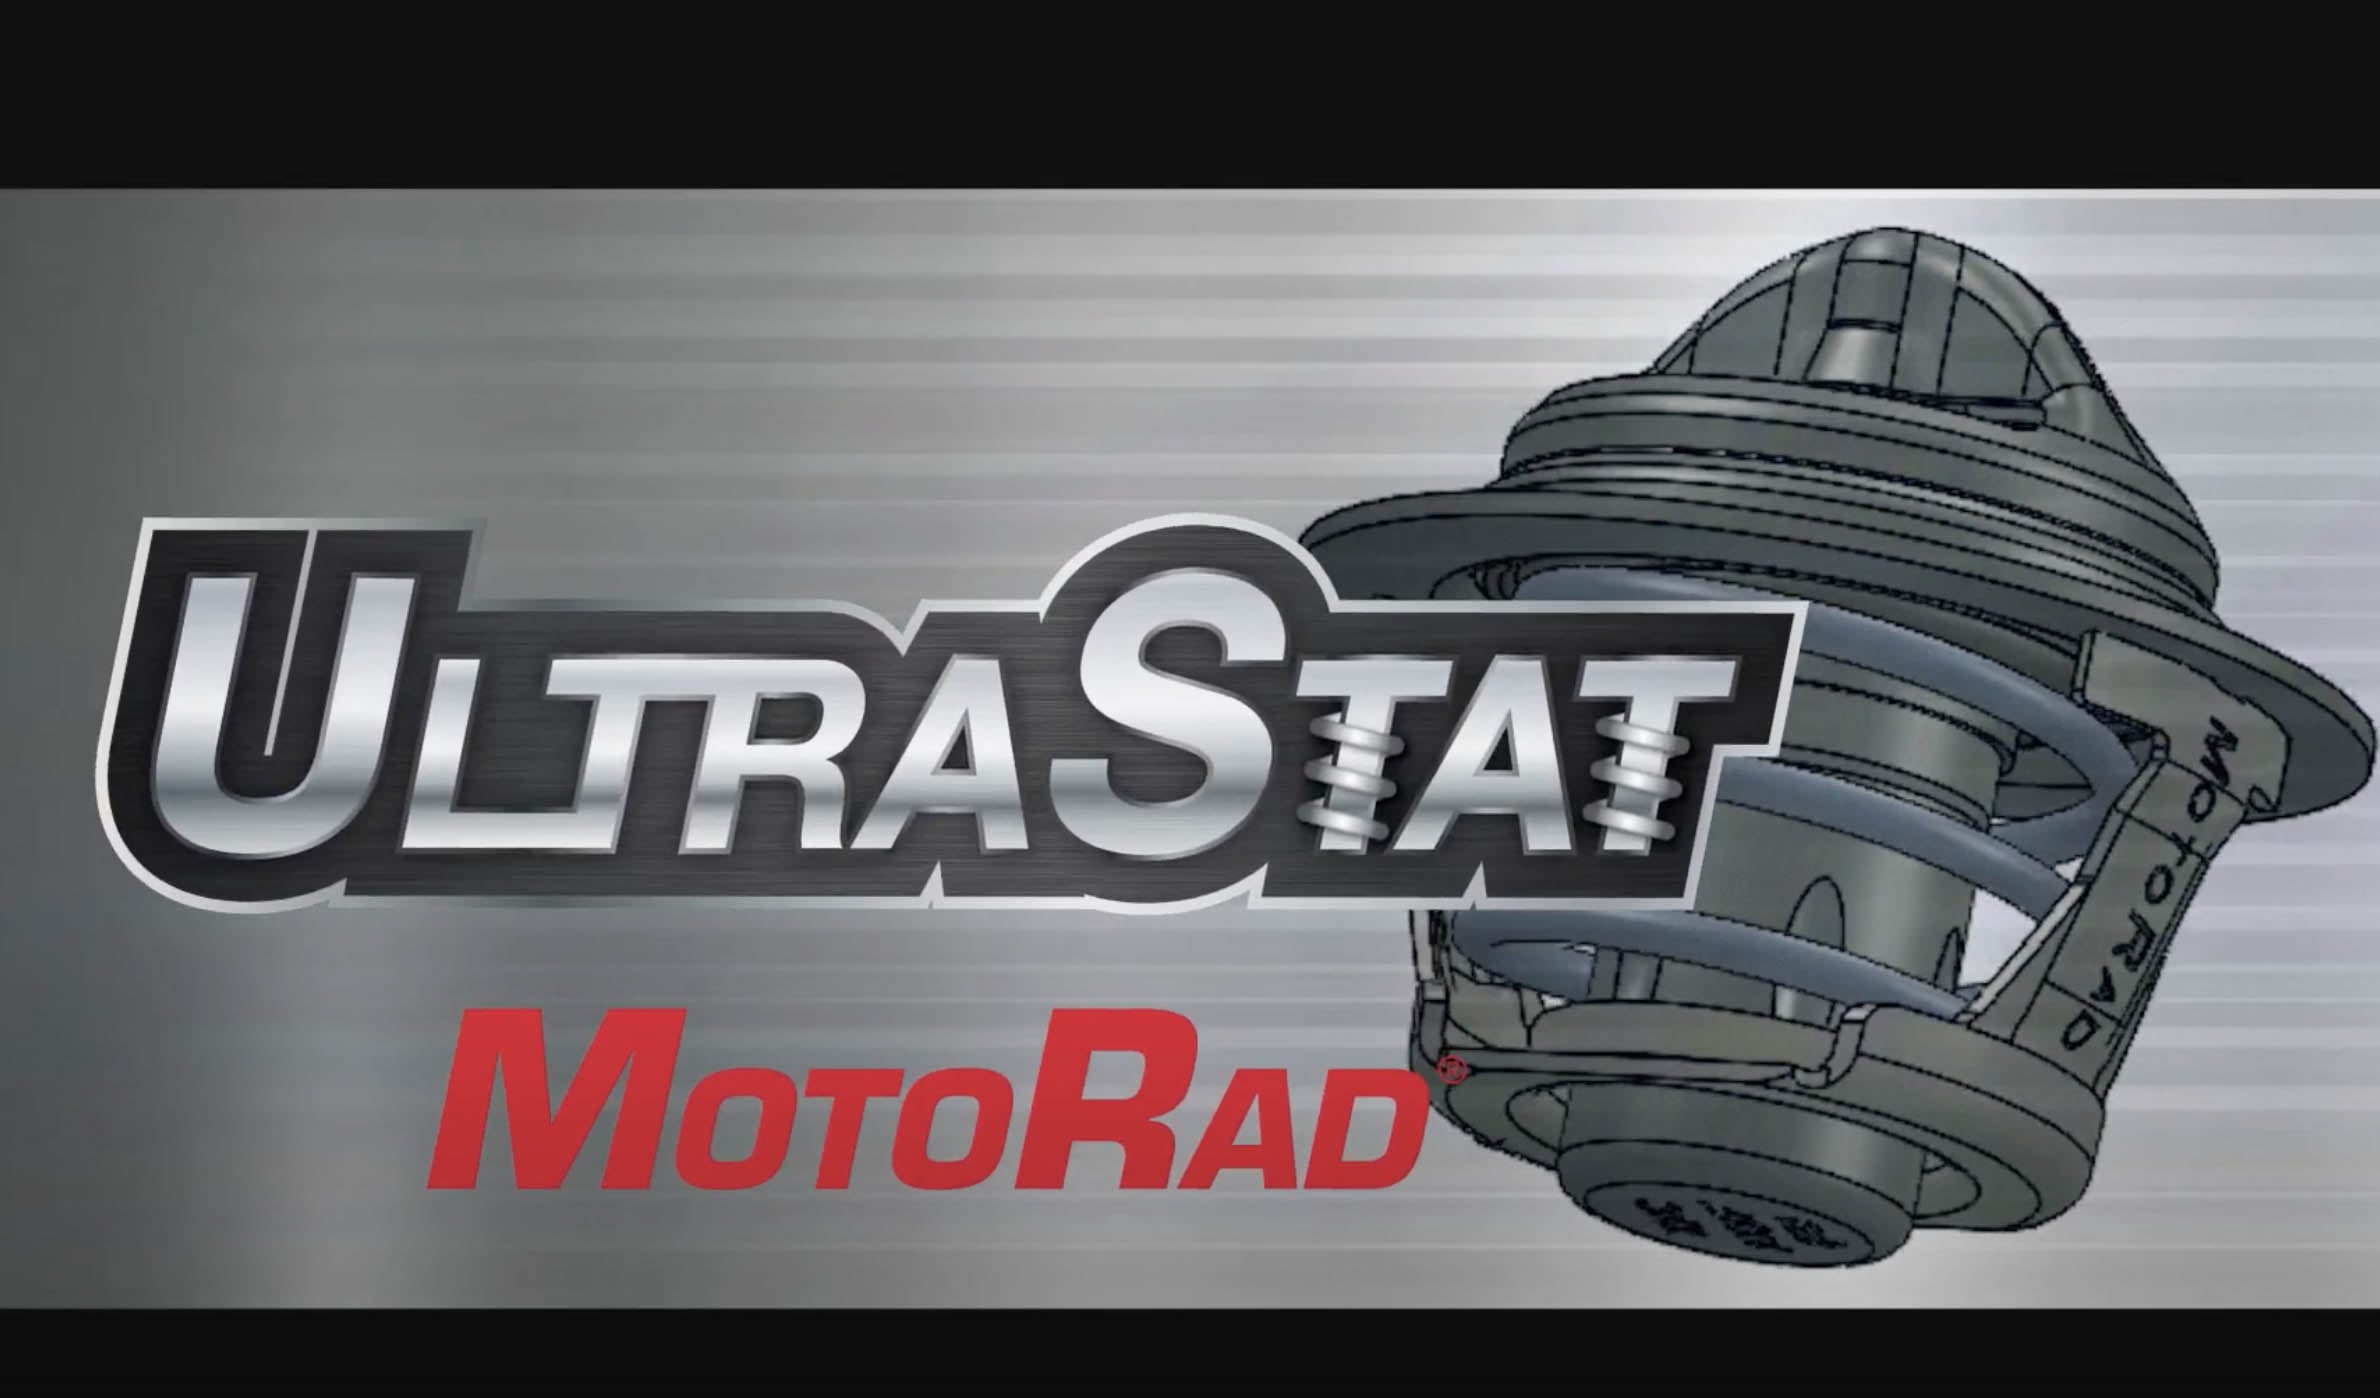 MotoRad UltraStat: descripción general en vídeo